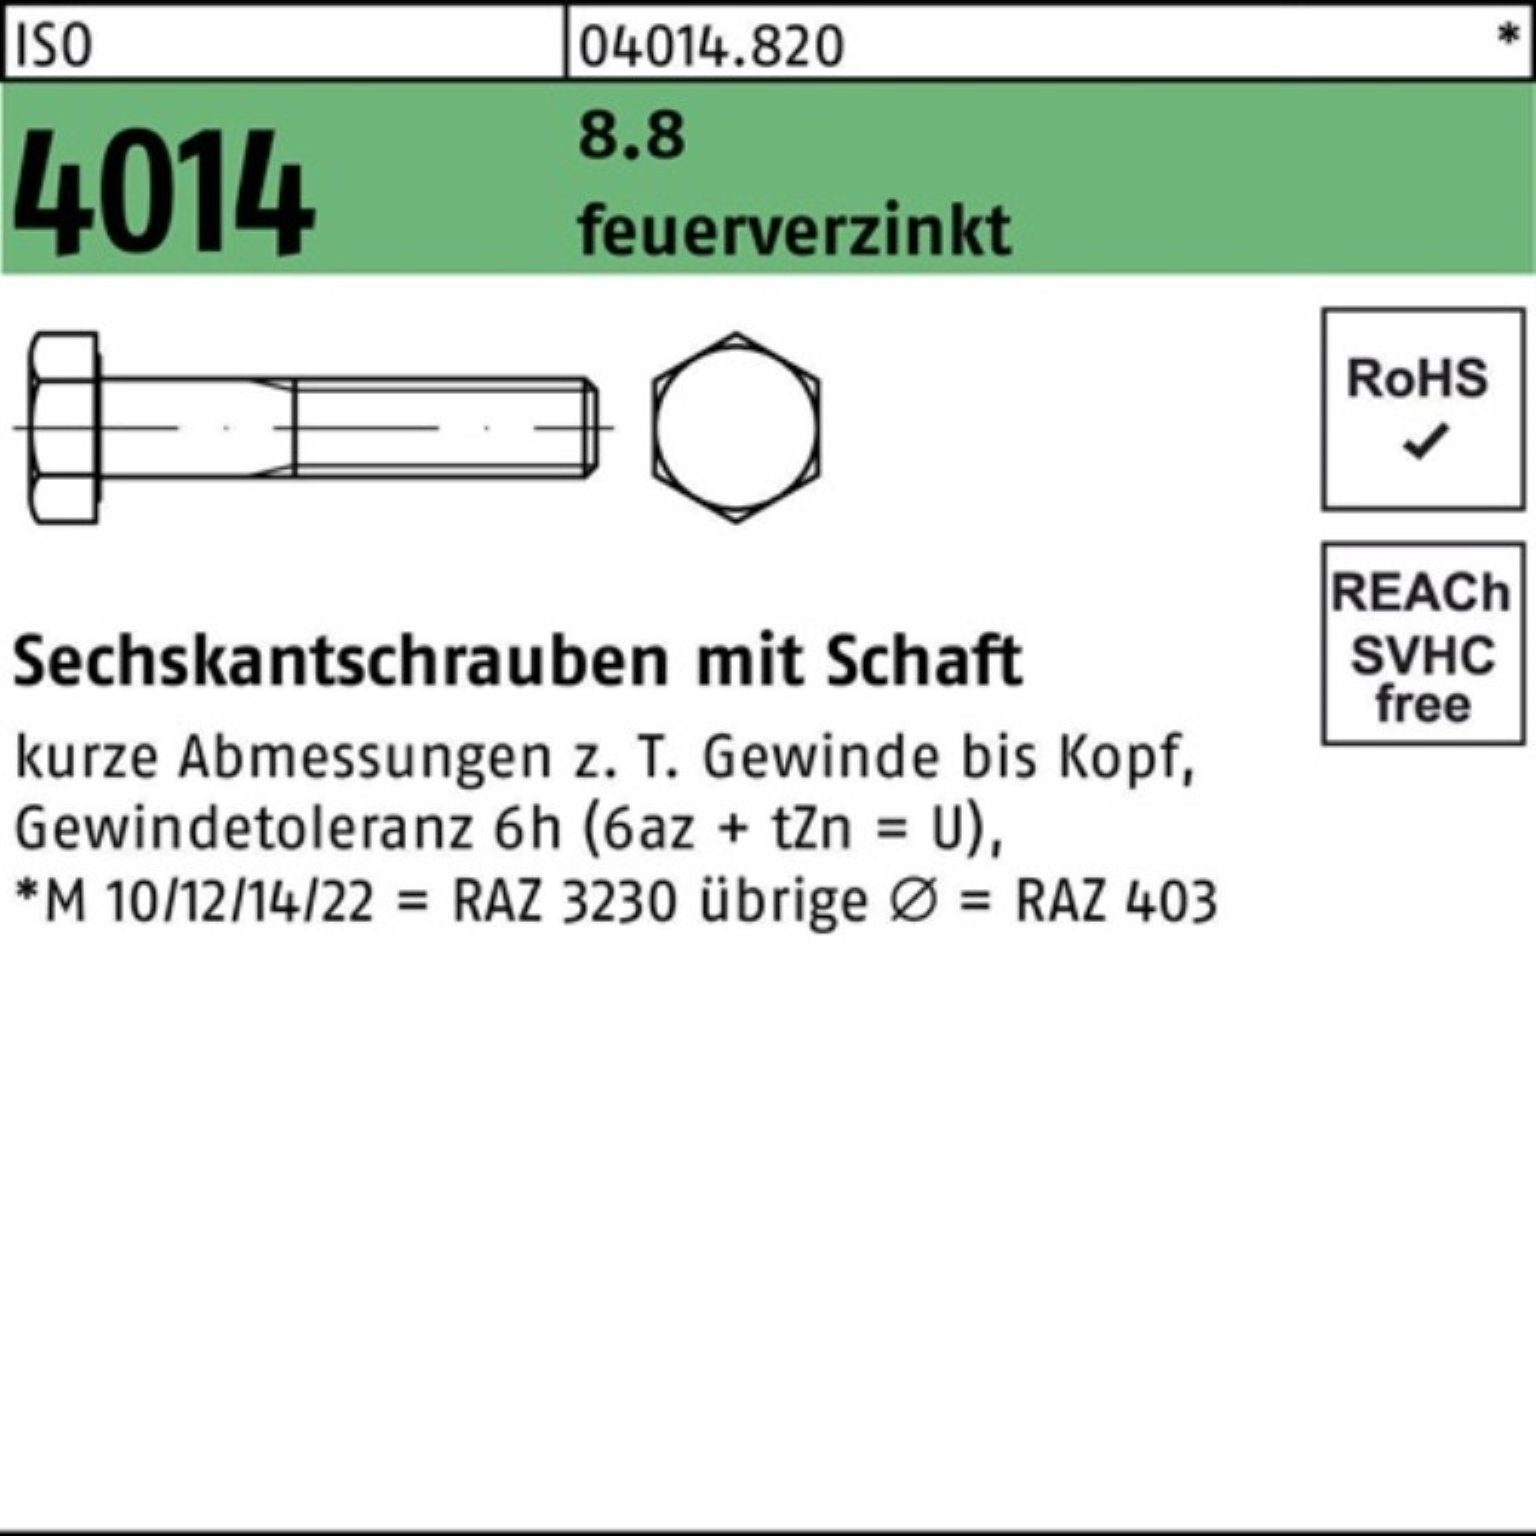 Bufab Sechskantschraube 100er Pack 8.8 ISO feuerverz. M20x 2 110 Sechskantschraube 4014 Schaft